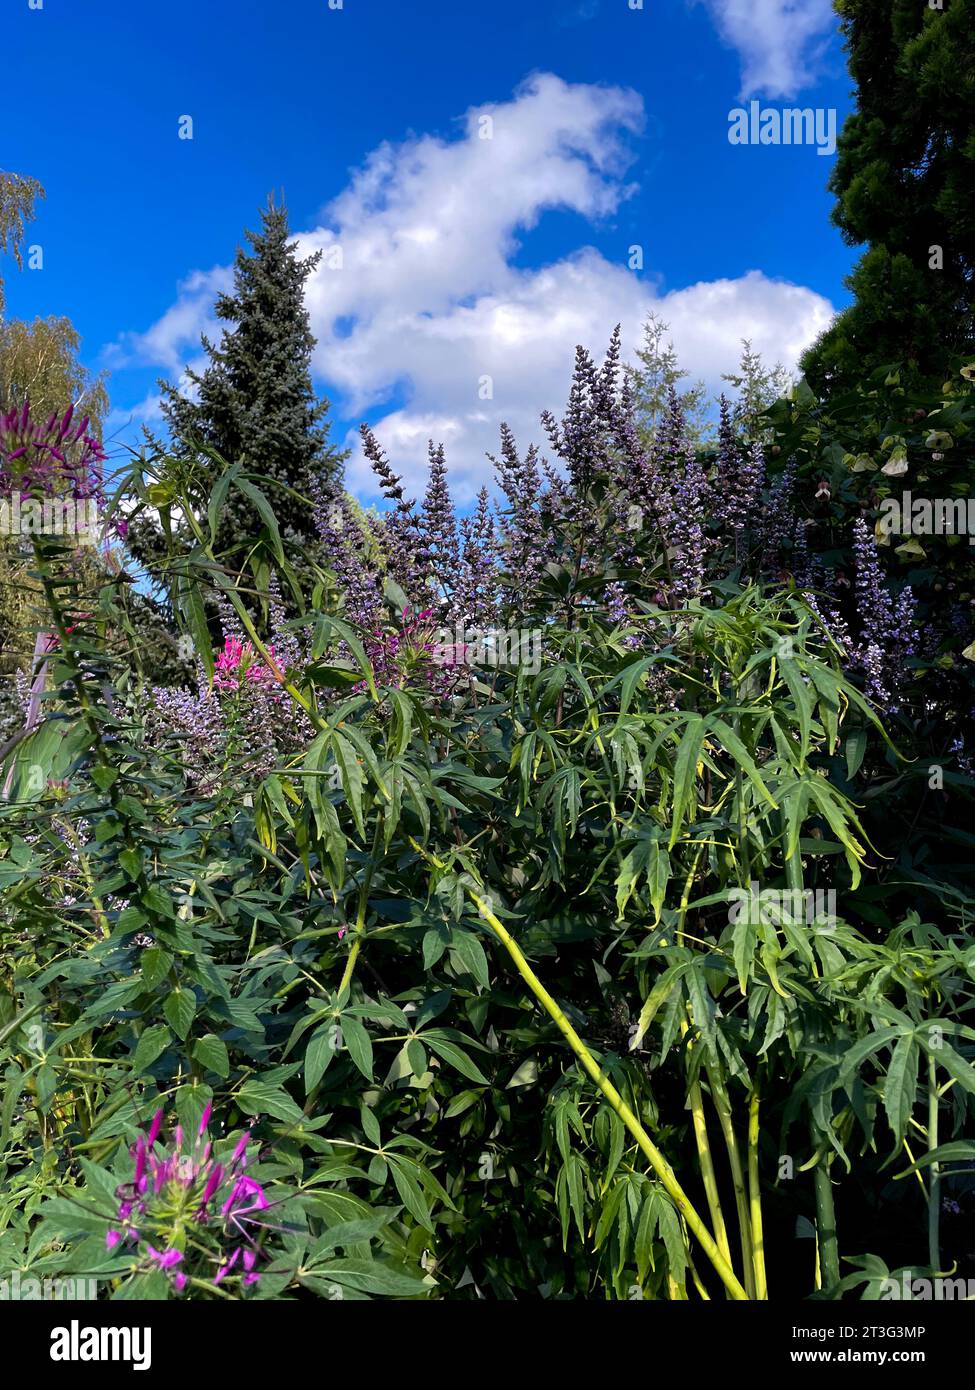 lila Spinnenblume Blüte, Cleome spinosa, mit Cannabis ähnlichem Duft und Aussehen Foto Stock